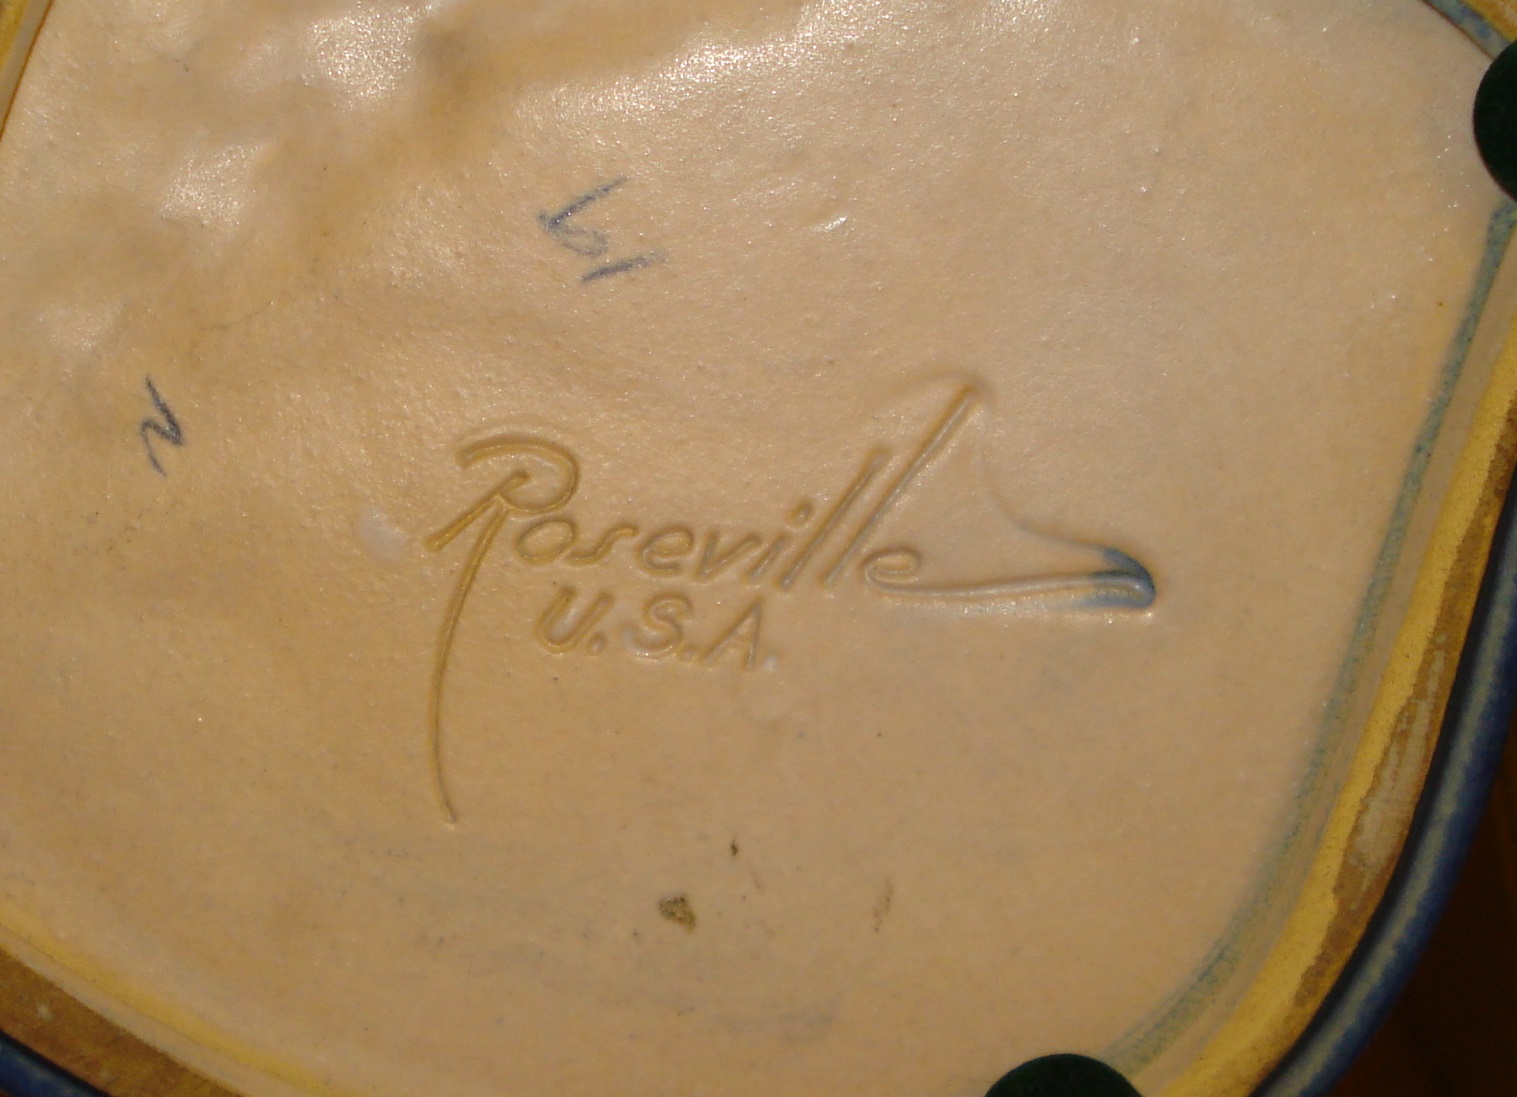 roseville pottery mark 4.jpg